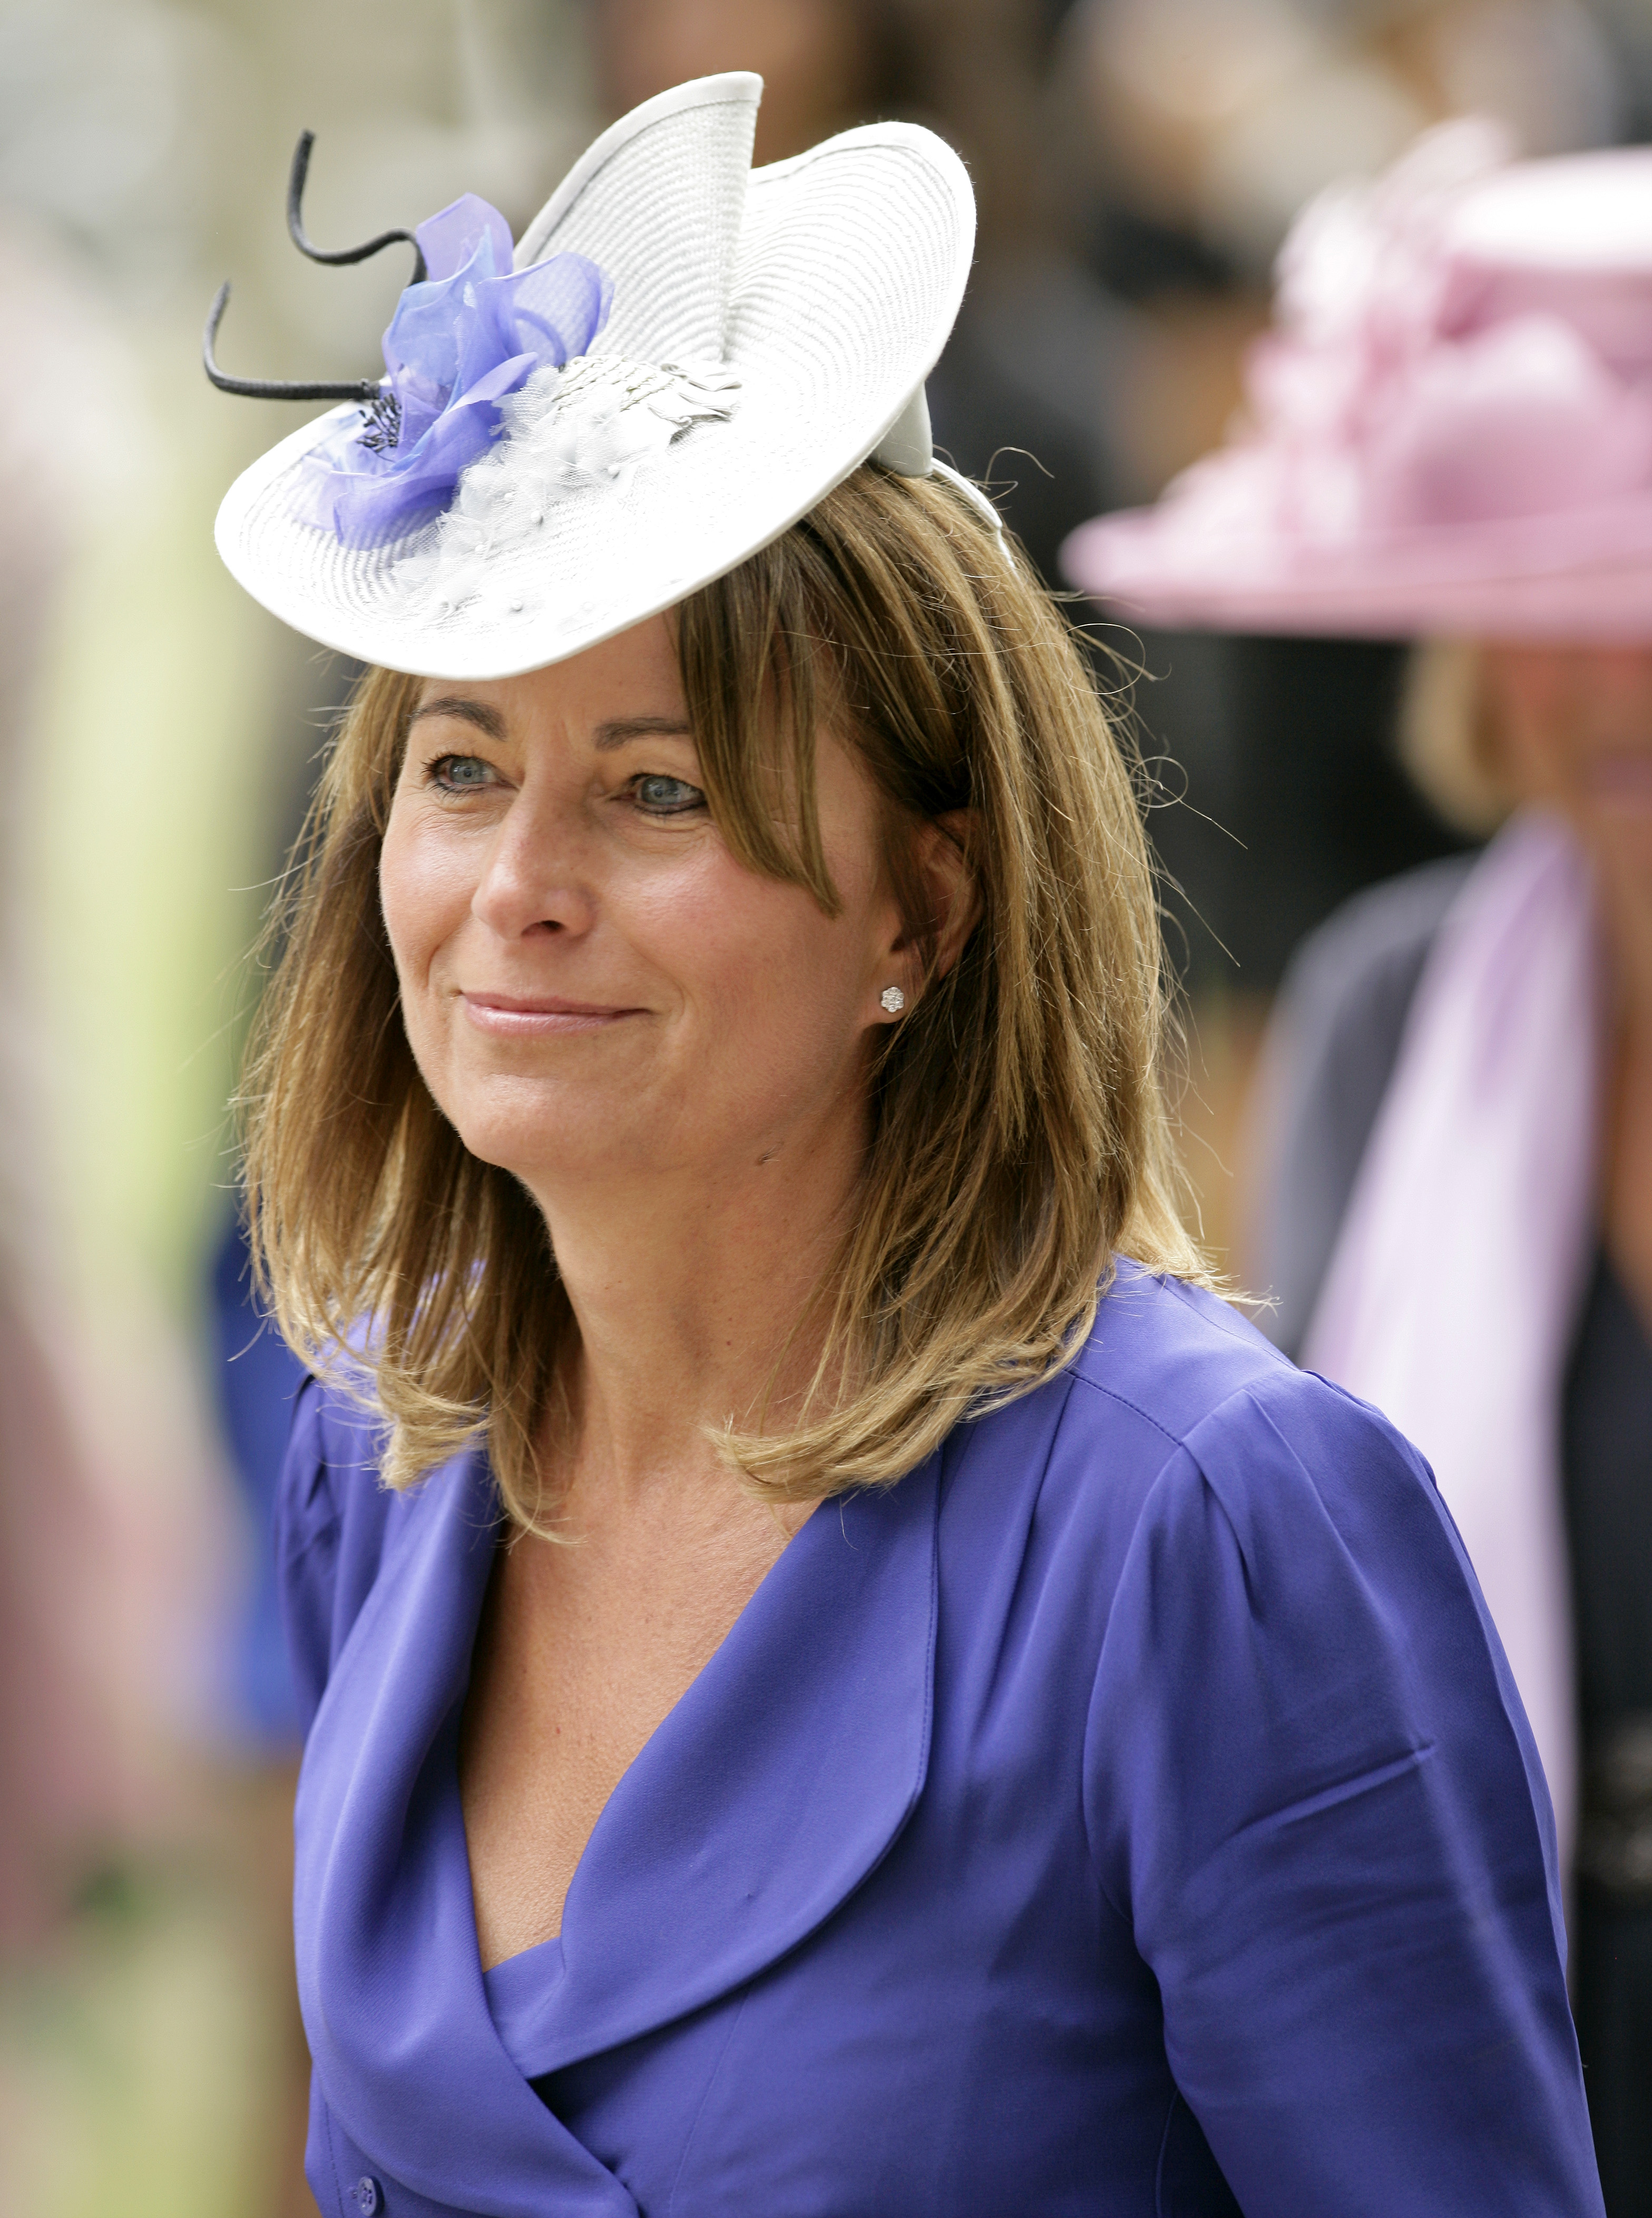 Carole Middleton besucht Tag 5 von Royal Ascot auf der Ascot-Rennbahn in England, am 19. Juni 2010. | Quelle: Getty Images